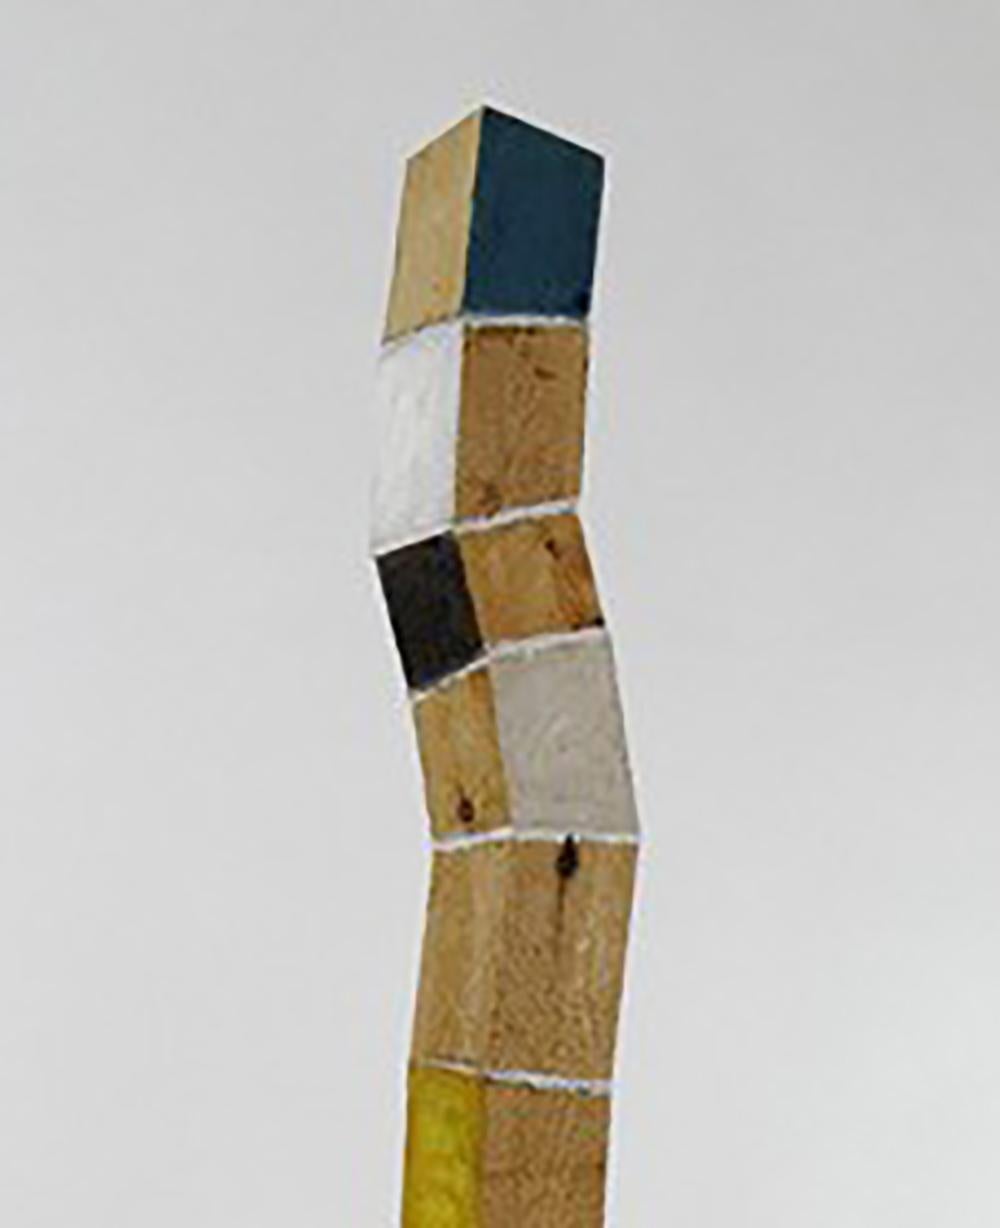 New Growth (Scultura a torre verticale in legno curvo multicolore)  - Sculpture di Peter Hoffman